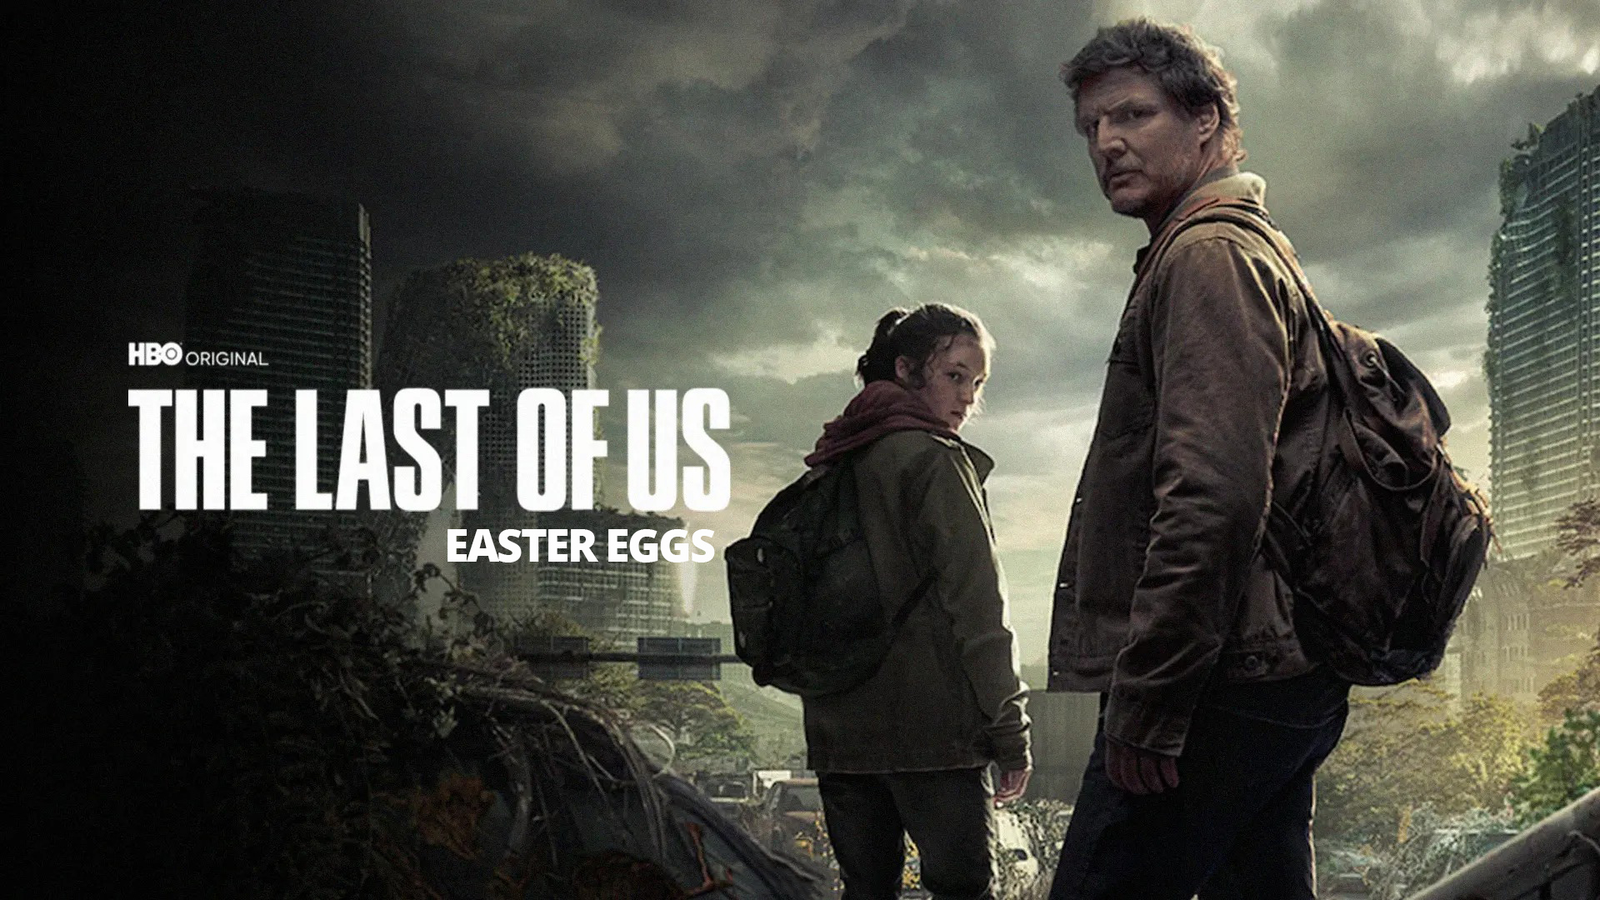 ASSISTIR THE LAST OF US EP 5 COMPLETO DUBLADO: Veja como e onde assistir  novo episódio de The Last of Us